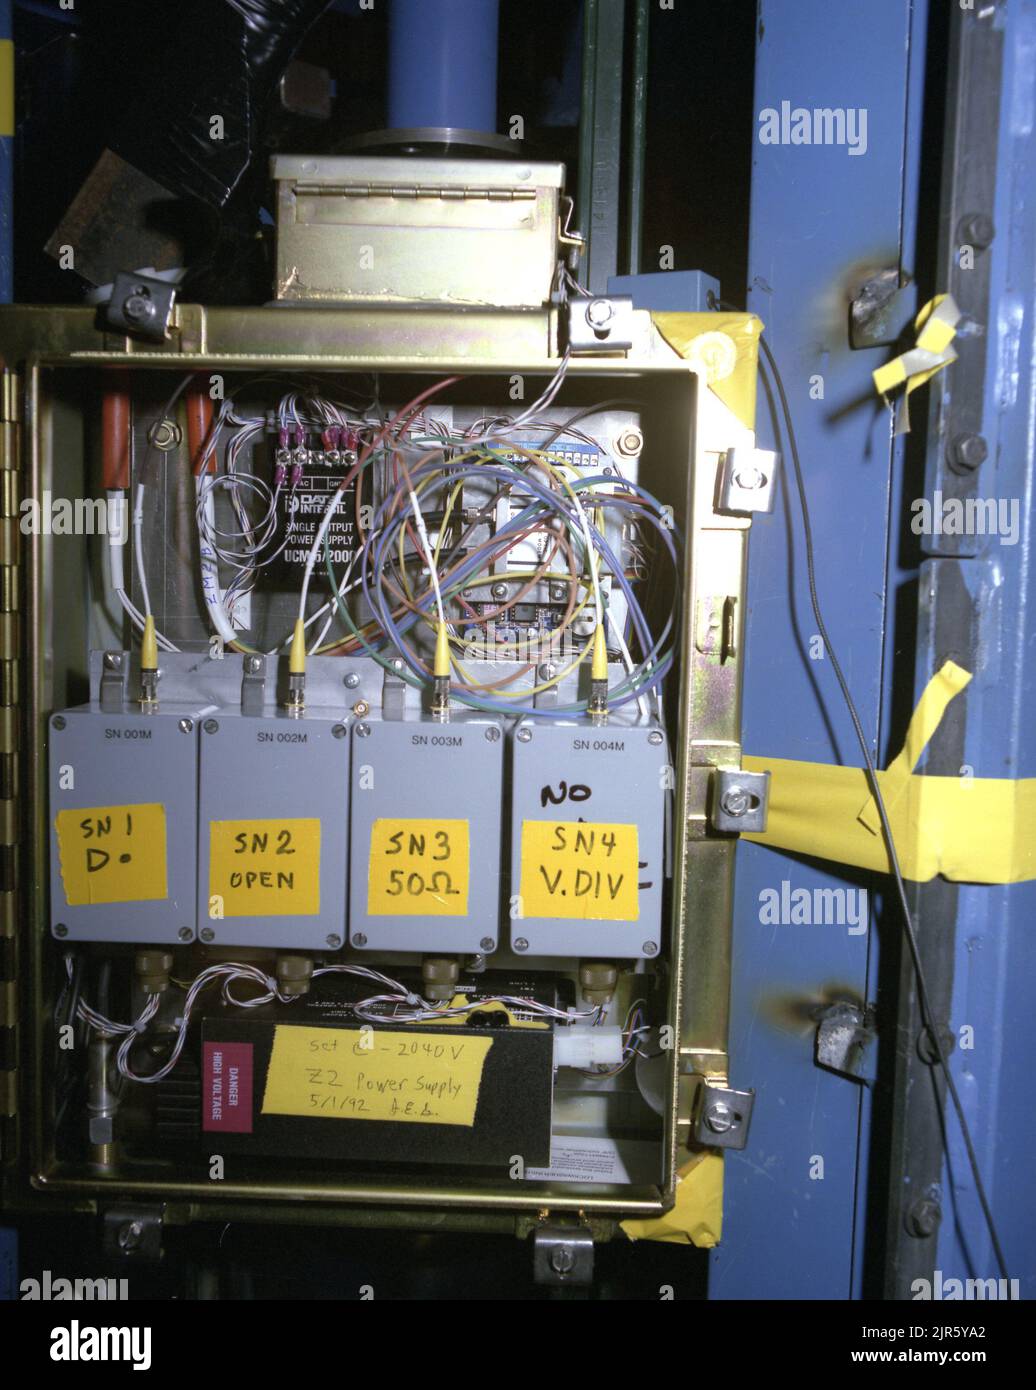 Nicht definiert. 1972 - 2012. Energieministerium. National Nuclear Security Administration. Fotos im Zusammenhang mit Atomwaffentests auf dem Testgelände in Nevada. Stockfoto